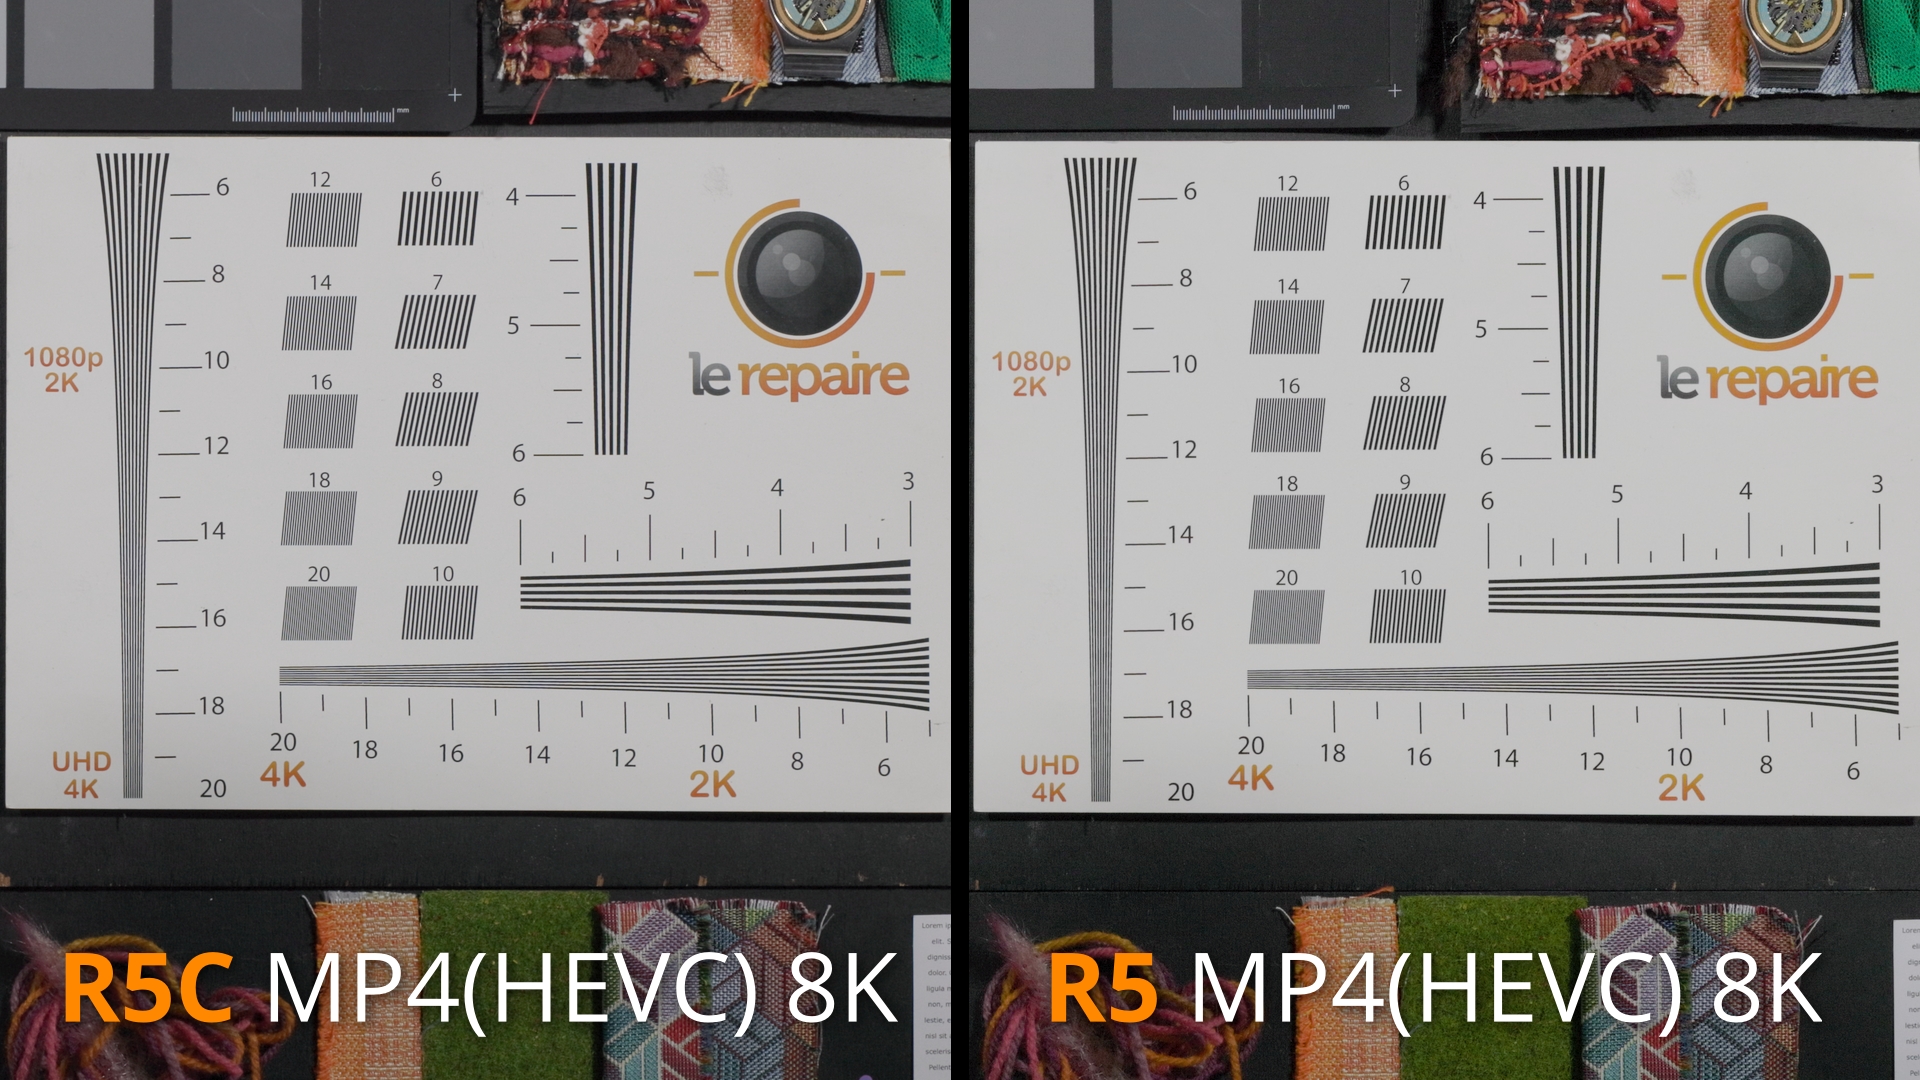 R5C 8K Vs R5 8K Mires_1.2.1.jpg